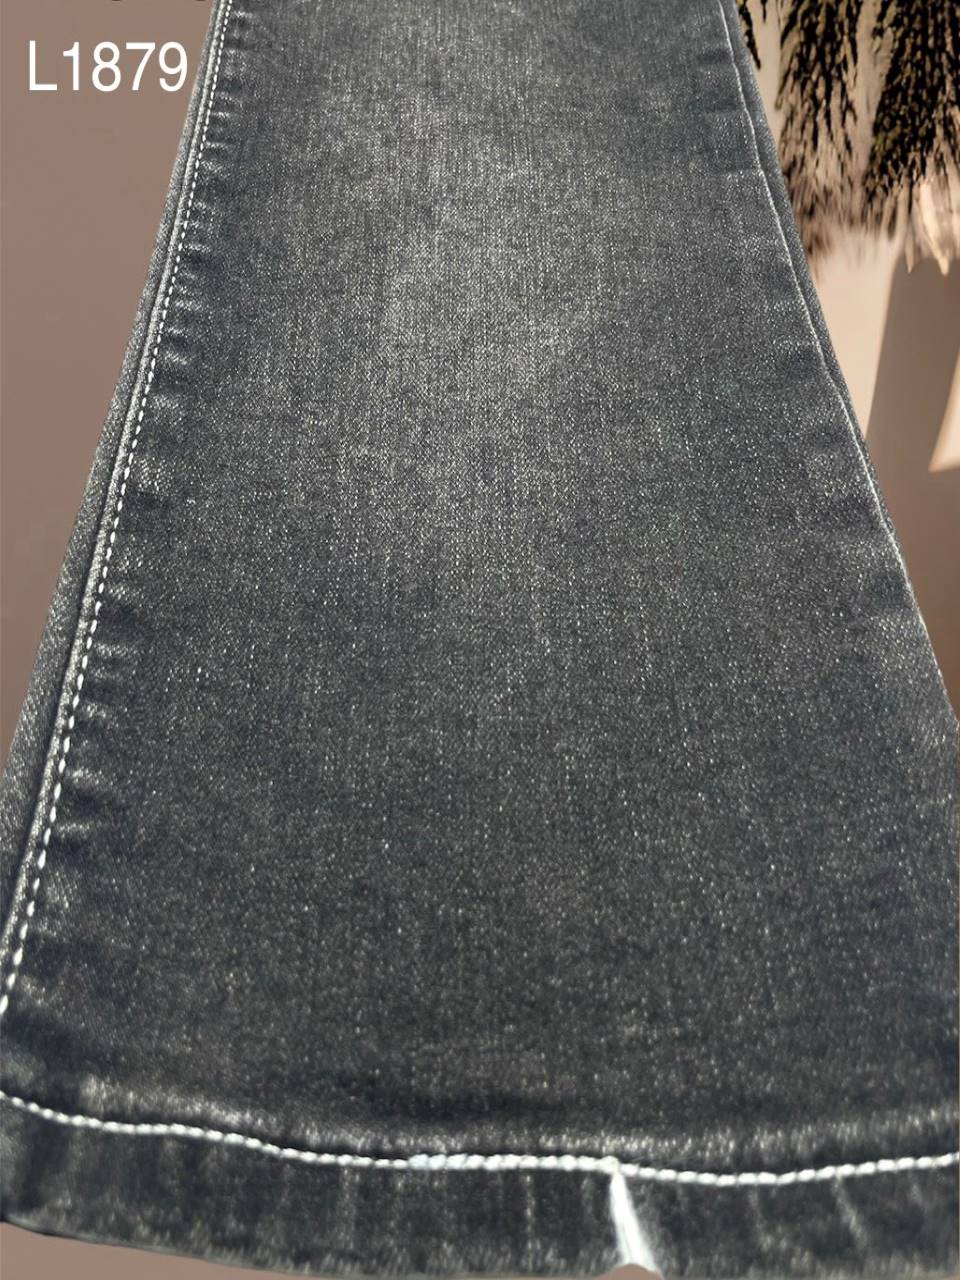 Vải jean Nam thun L1879 màu xám - xước dọc vừa